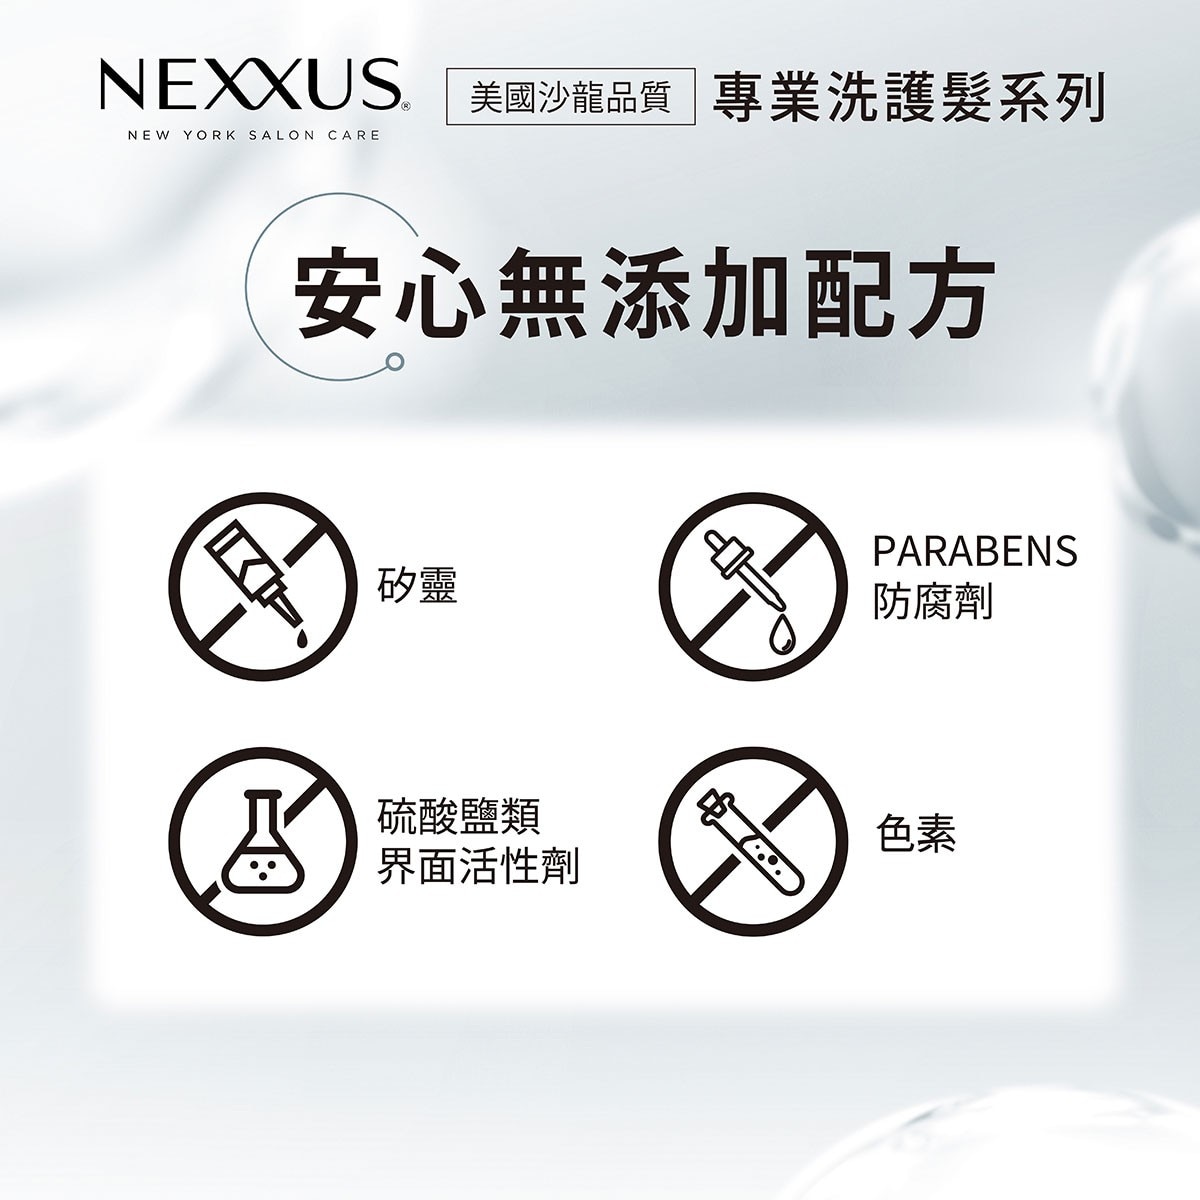 NEXXUS 白色深層純淨洗髮精 1公升 美國沙龍品質專業洗護髮系列，安心無添加配方